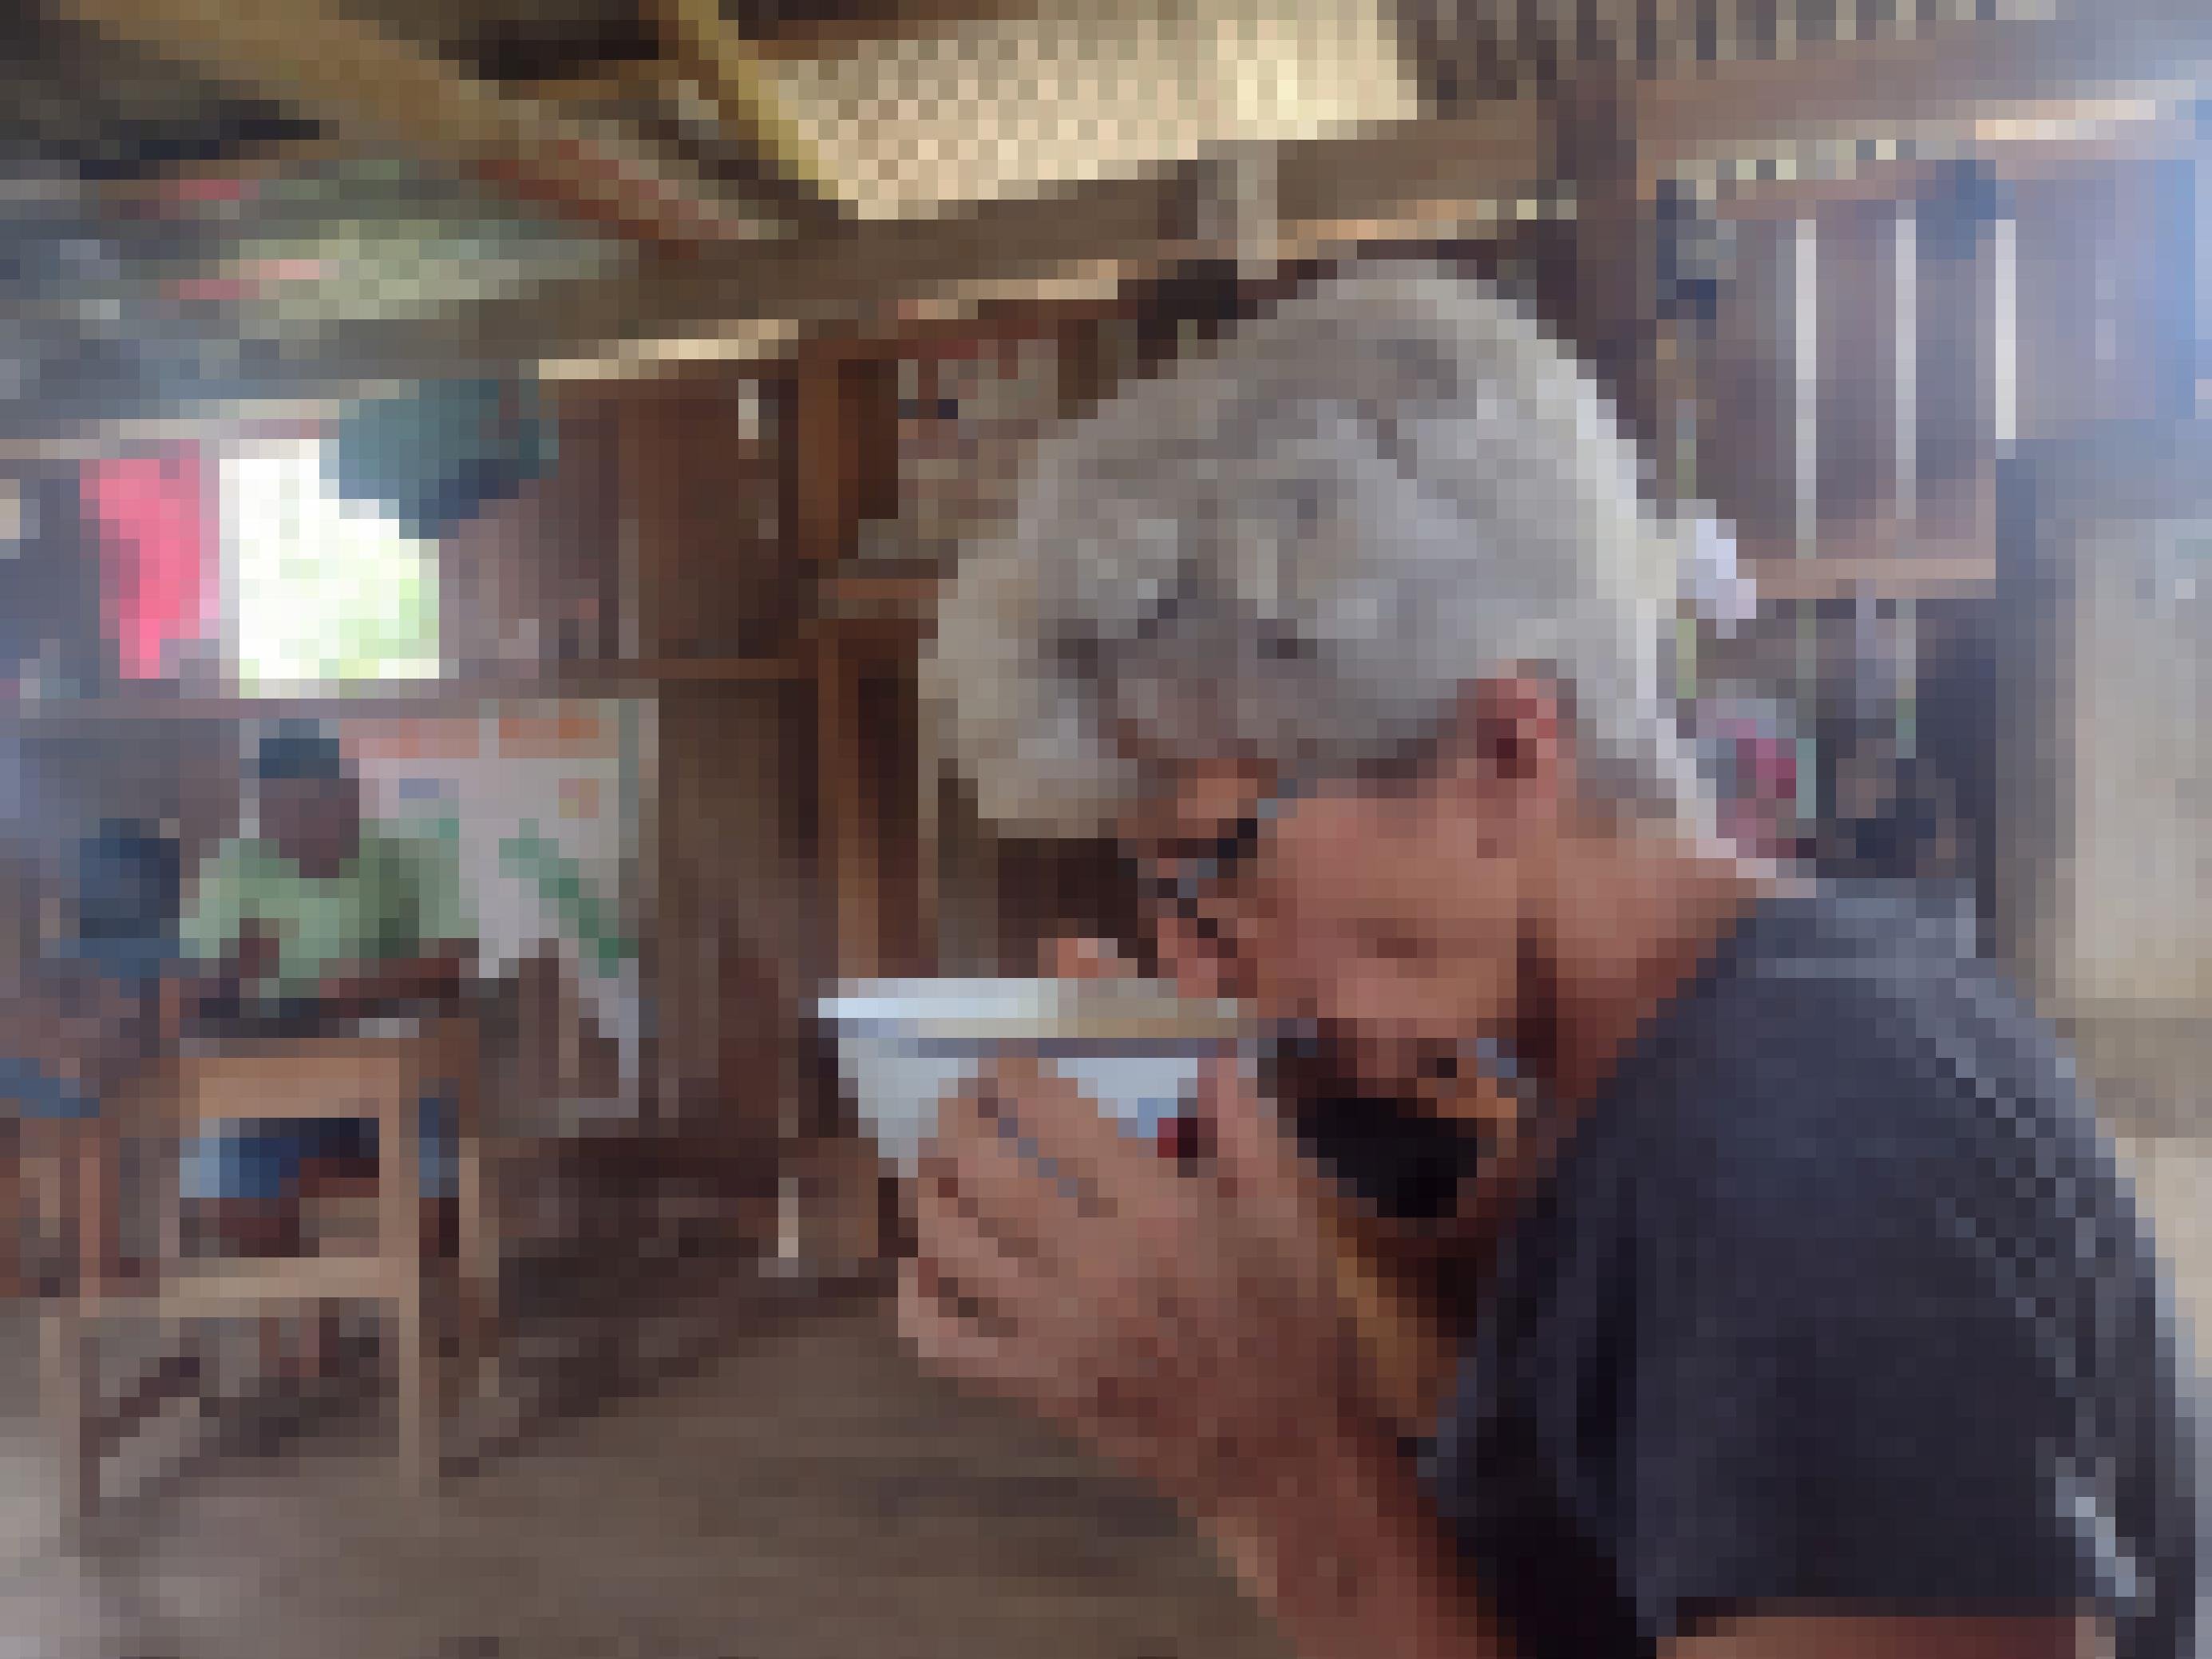 Im Vordergrund eine Frau mit kurzen weissen Haaren und Brille, trinkt ein weisses Gebräu aus einer breiten Schale. Im Hintergrund ein Mann an einem Tisch in einer Holzhütte, davor ein Kind.